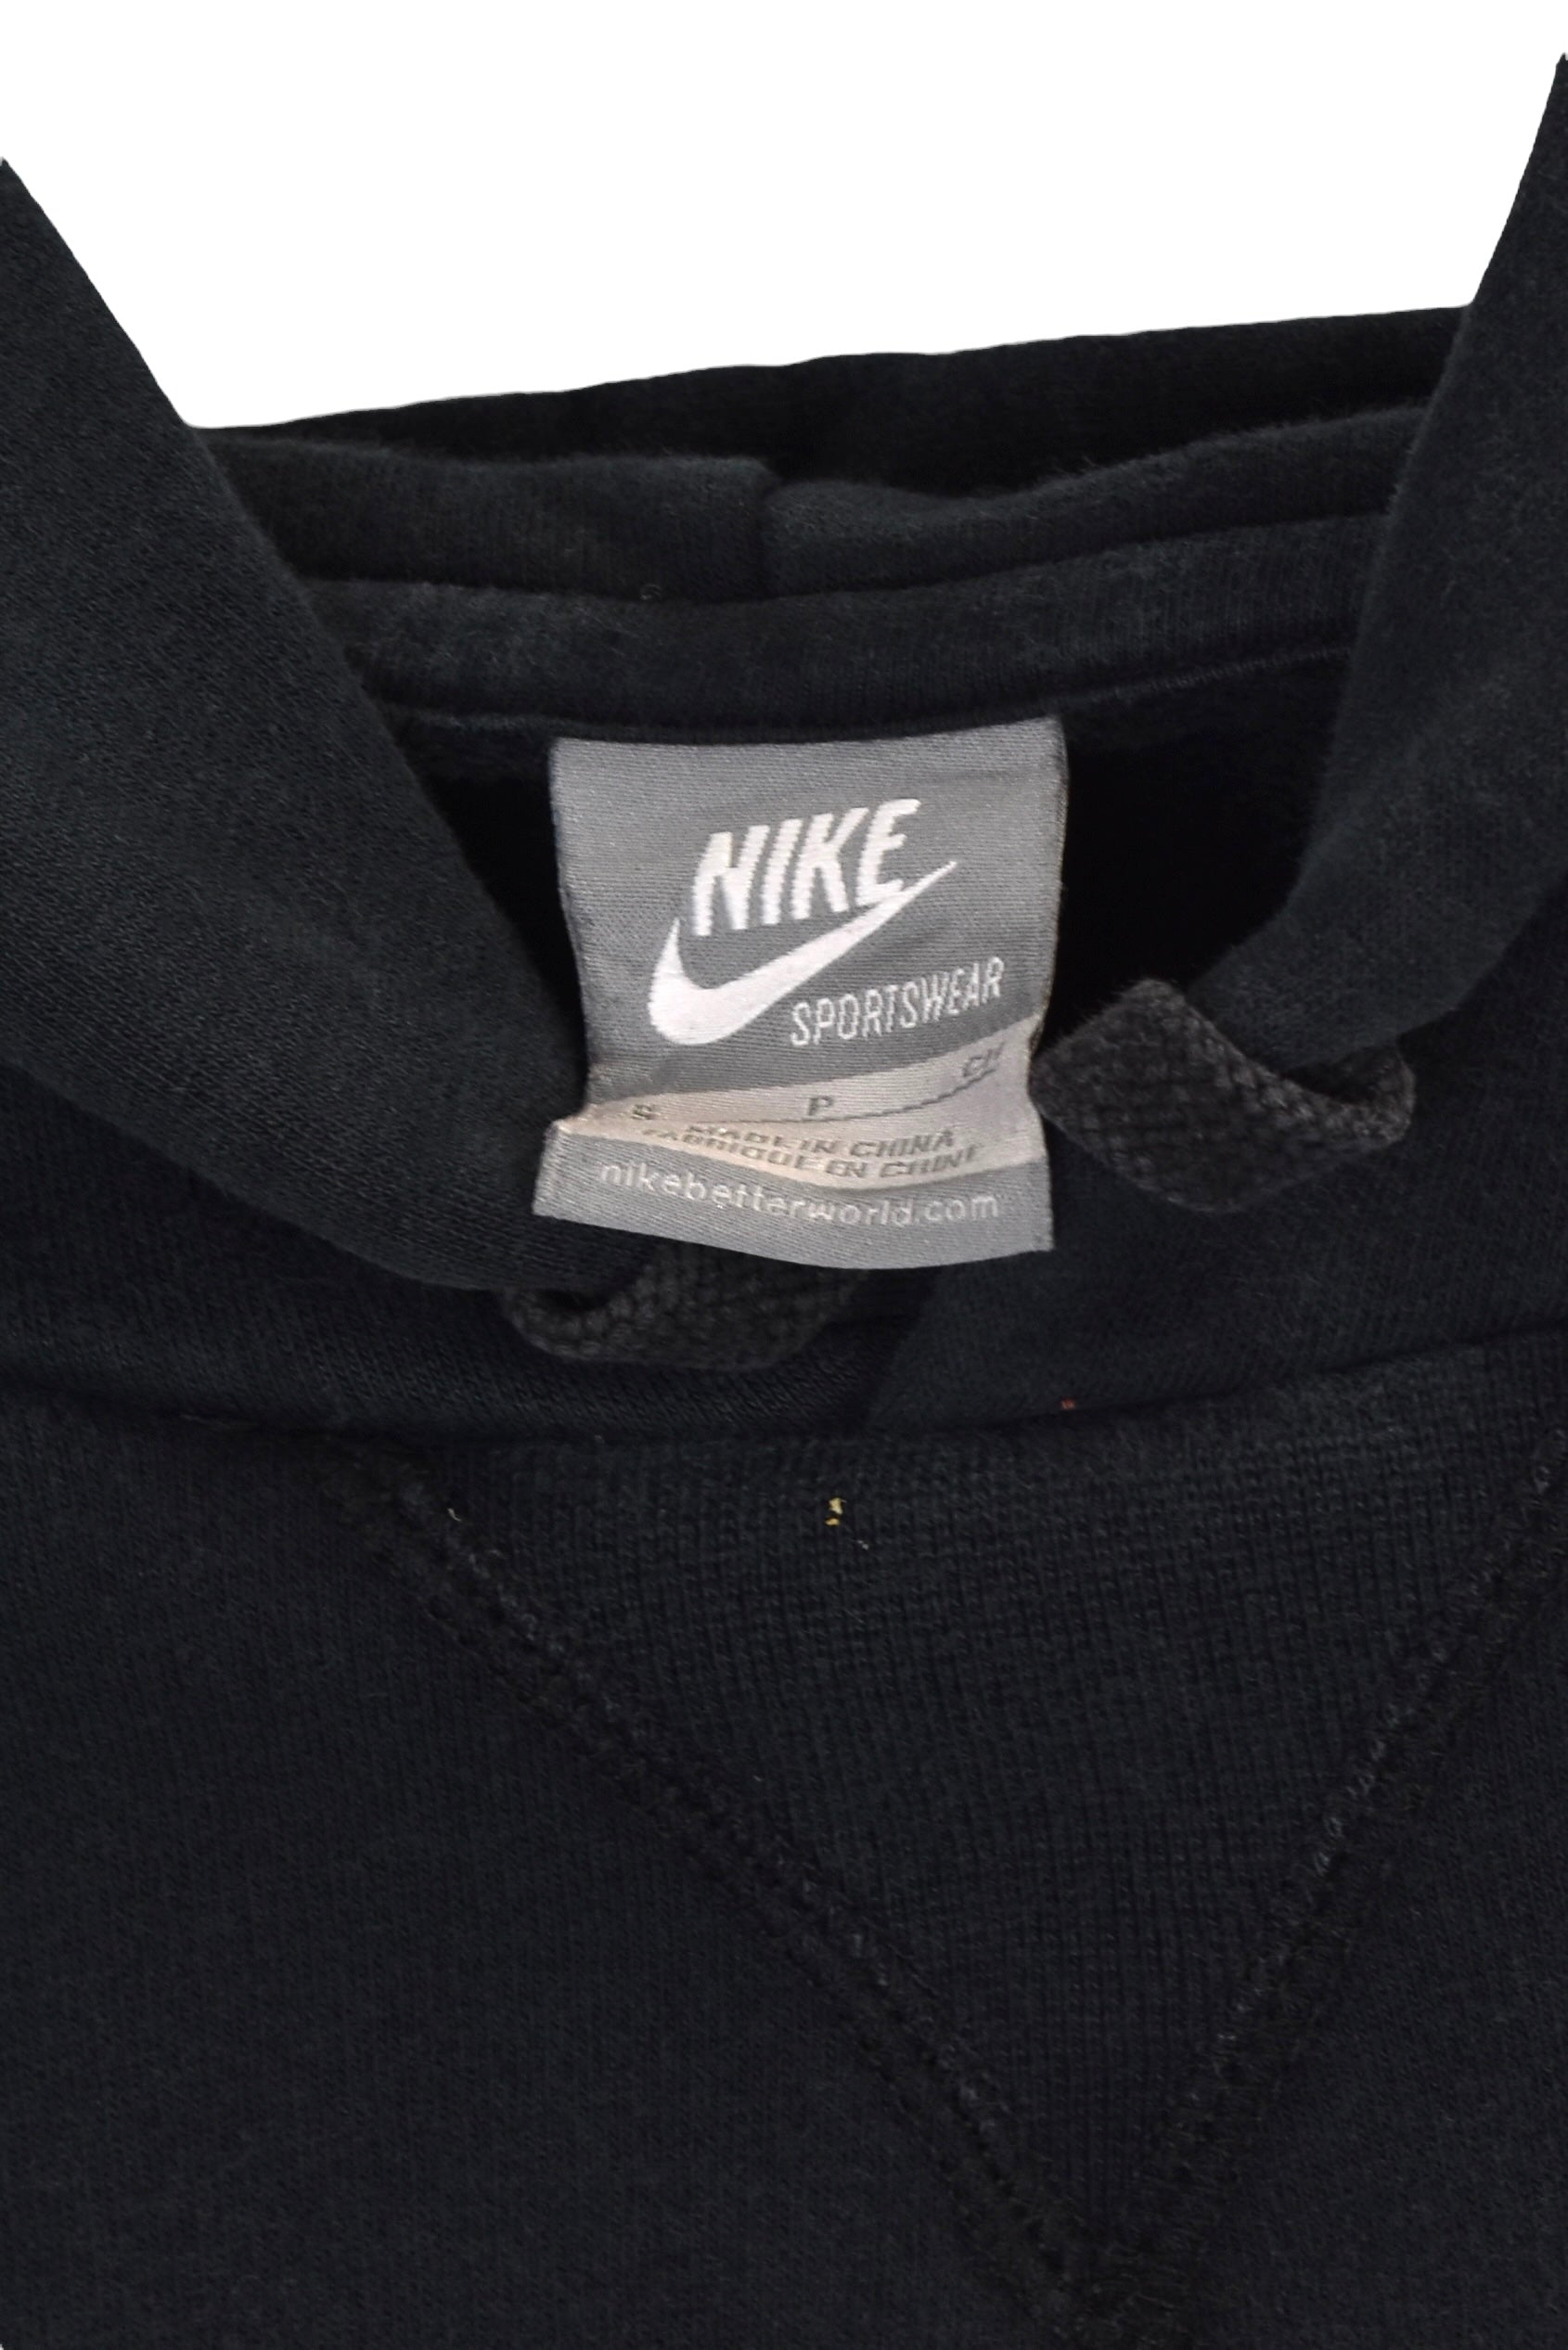 Vintage Nike hoodie (M), black graphic sweatshirt